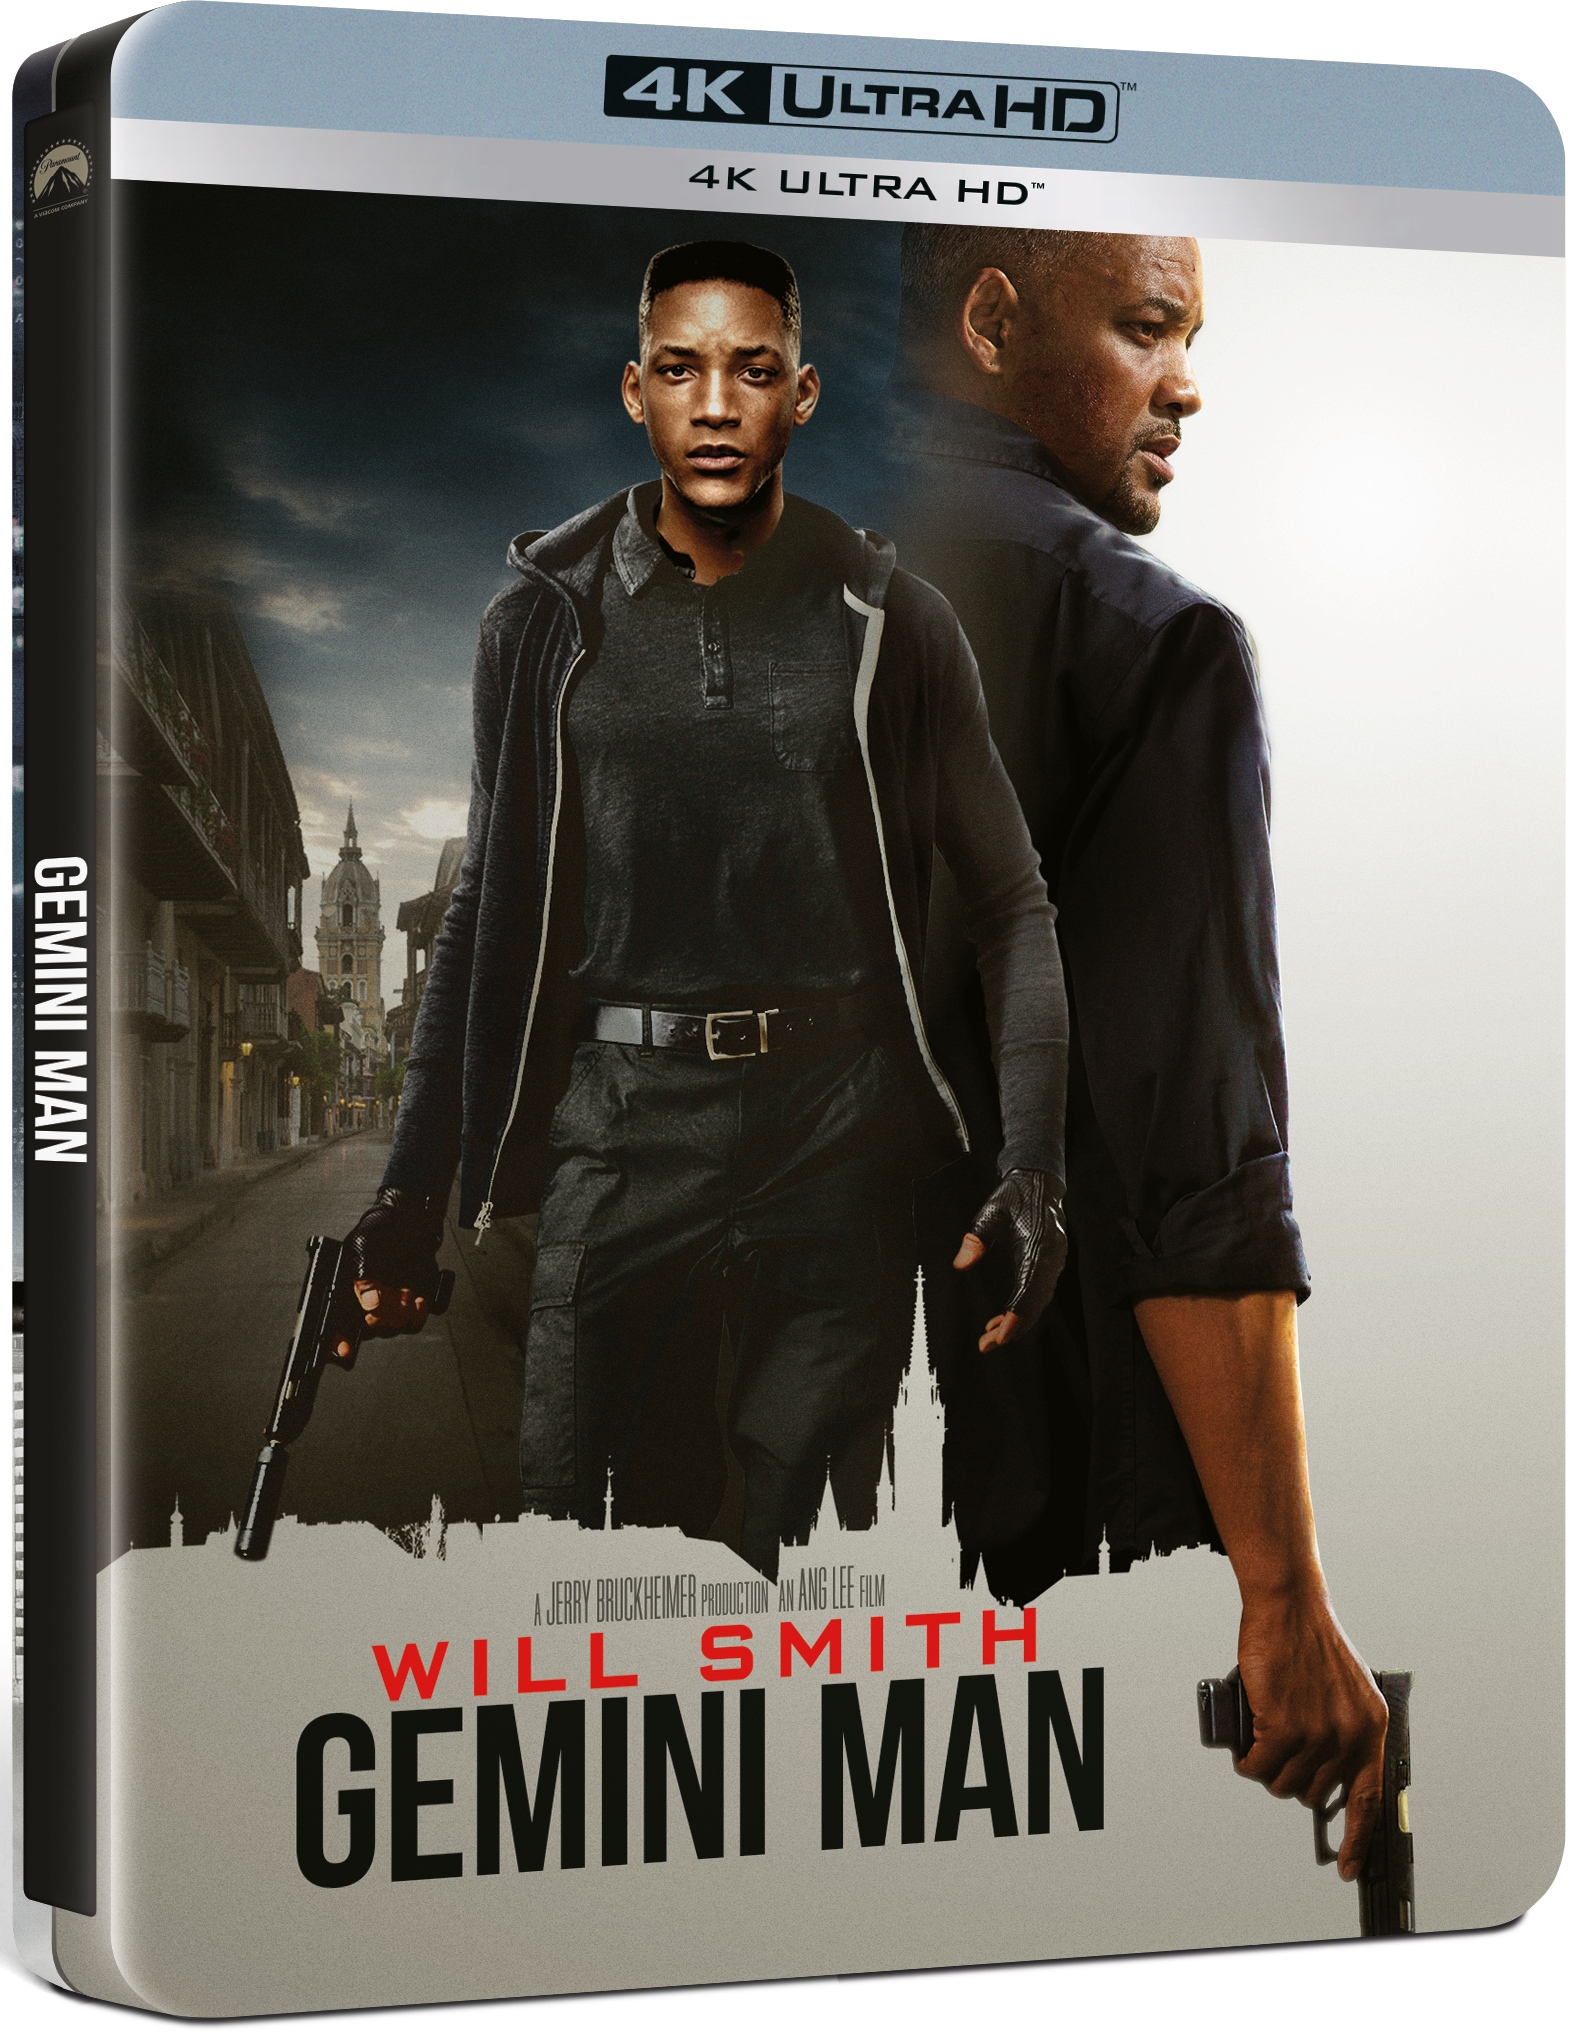 Gemini: Conspiratia / Gemini Man (4K/UHD - Steelbook) | Ang Lee